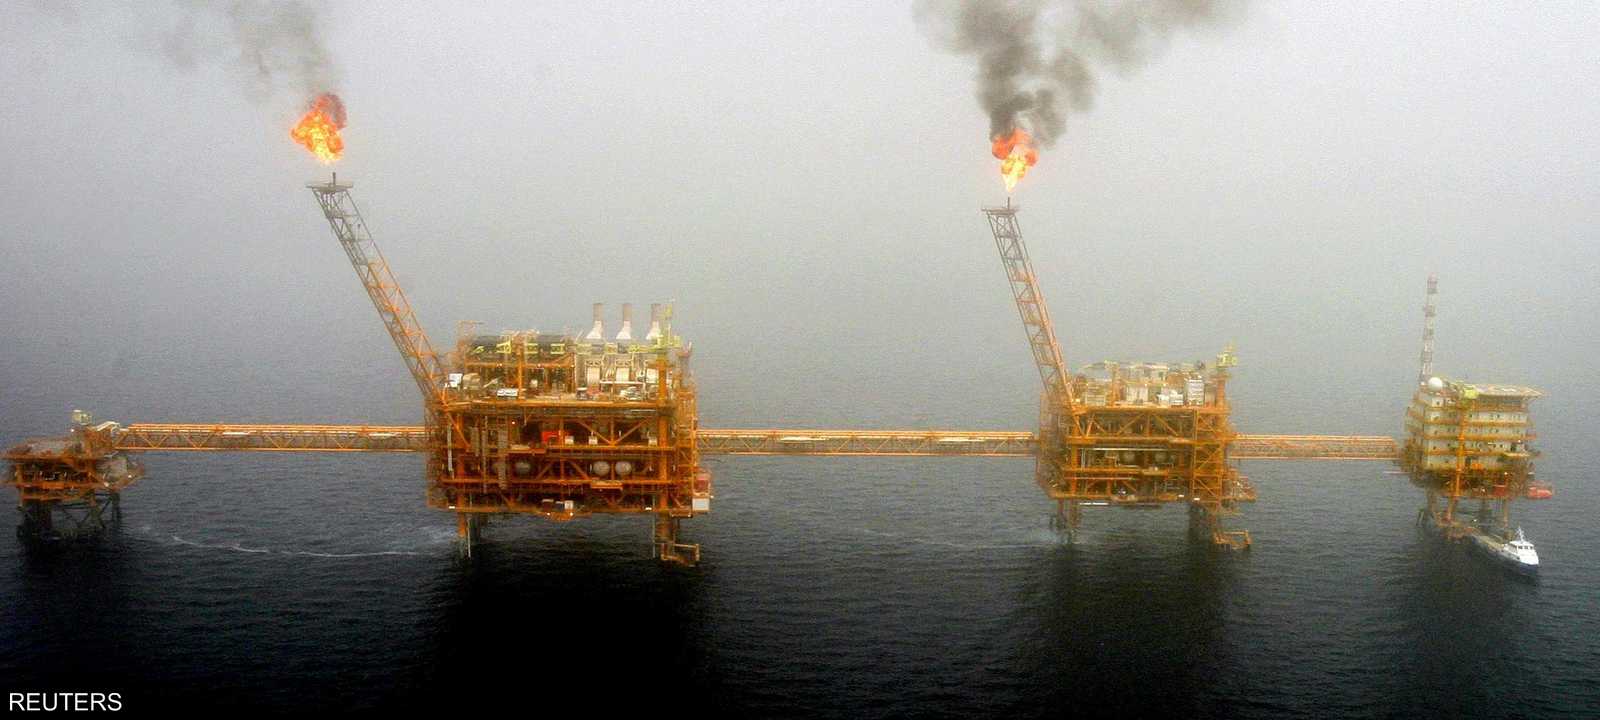 حادثة خليج عمان تصعد بأسعار النفط